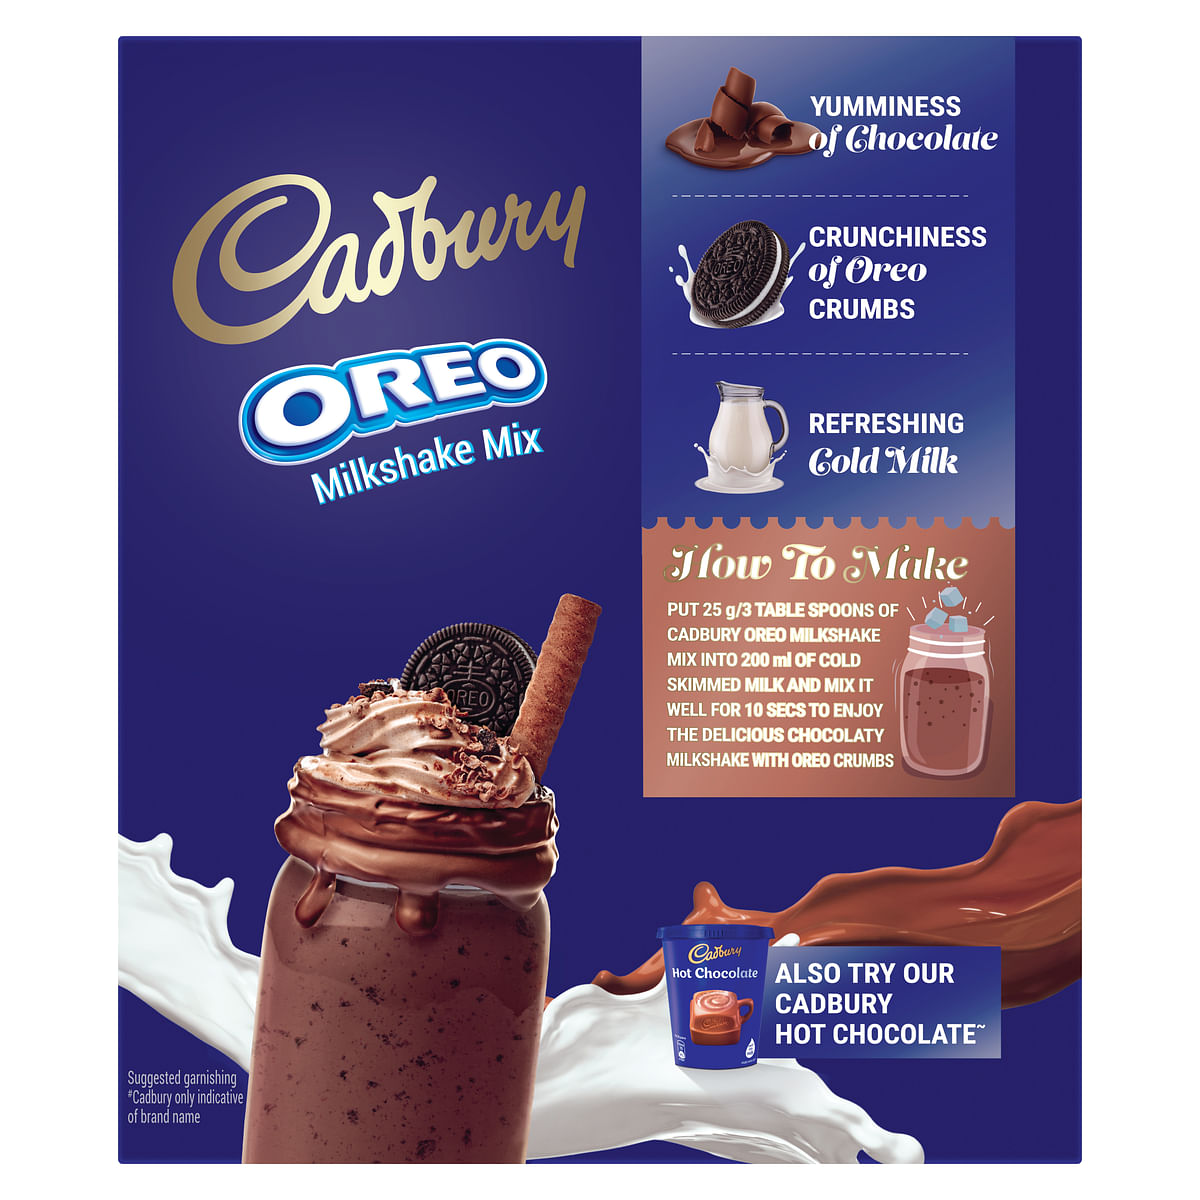 Cadbury Oreo Milkshake DIY guide